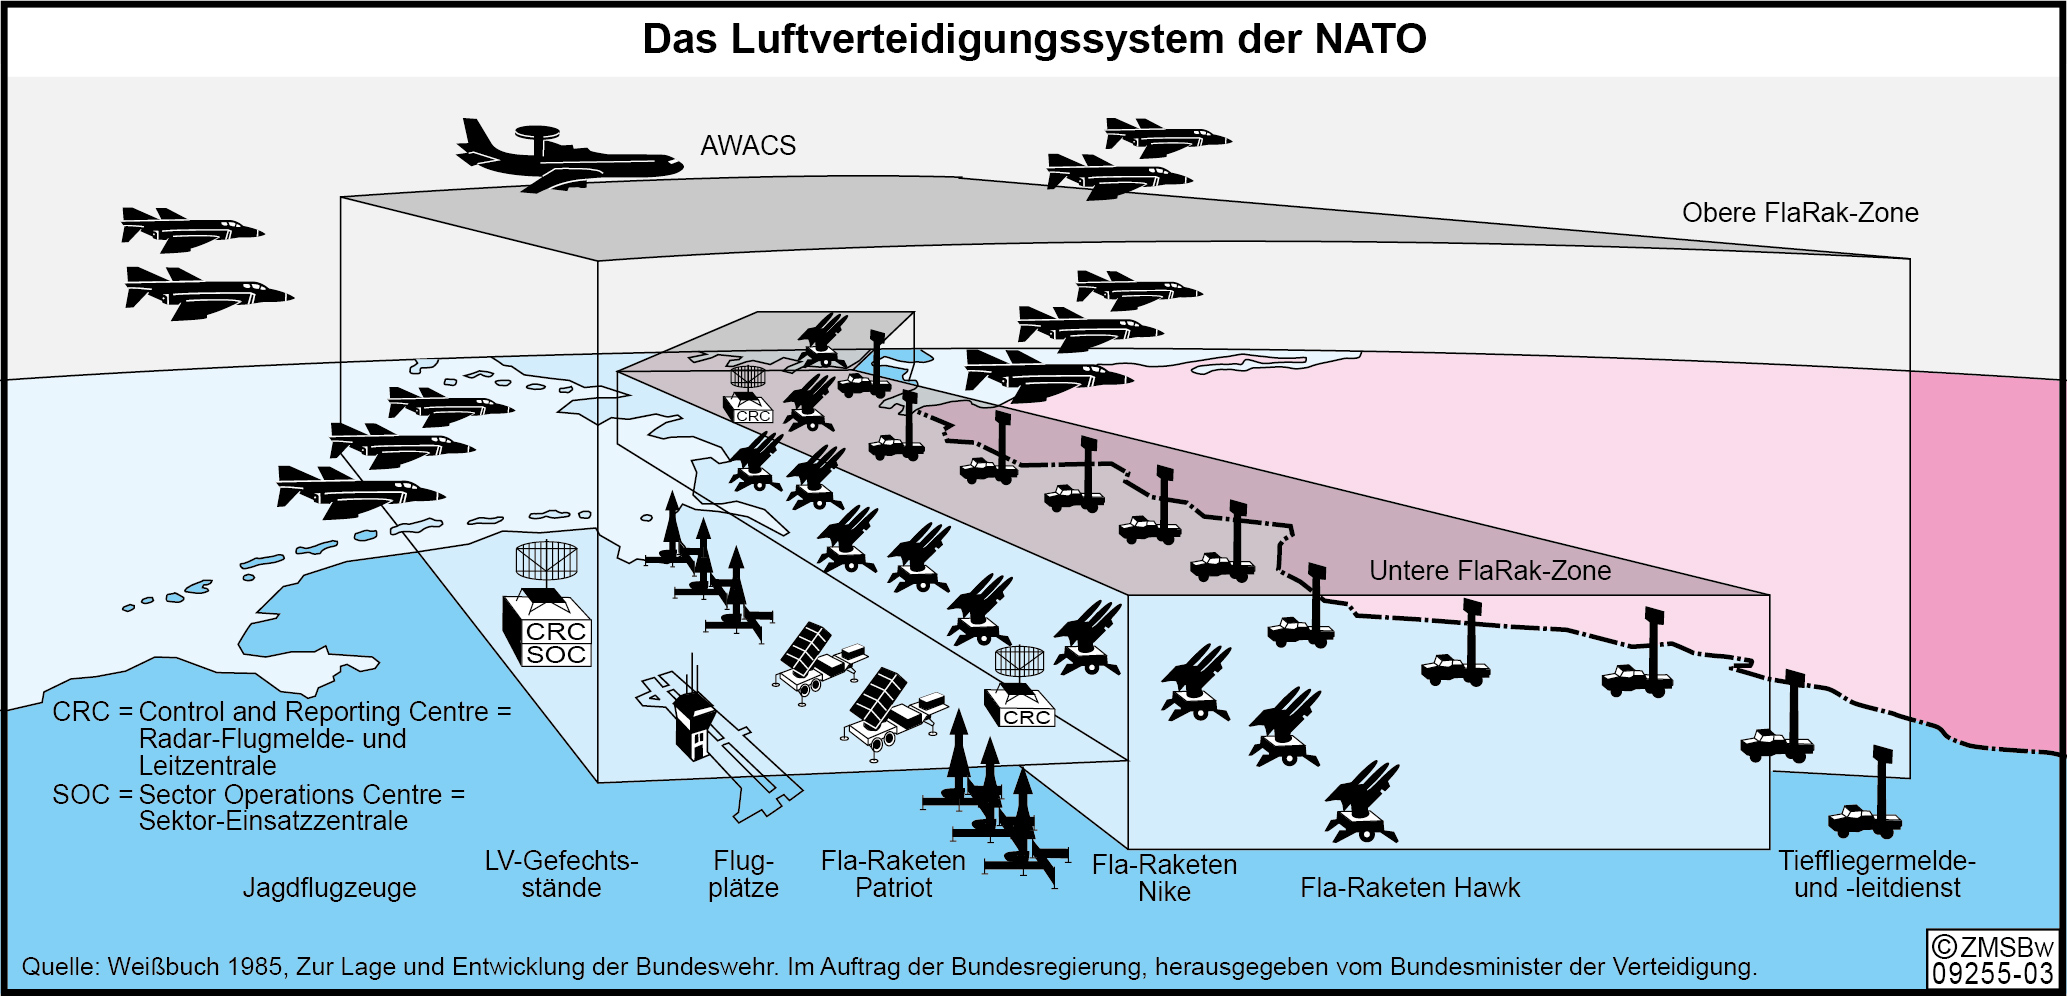 Das Luftverteidgungssystem der NATO